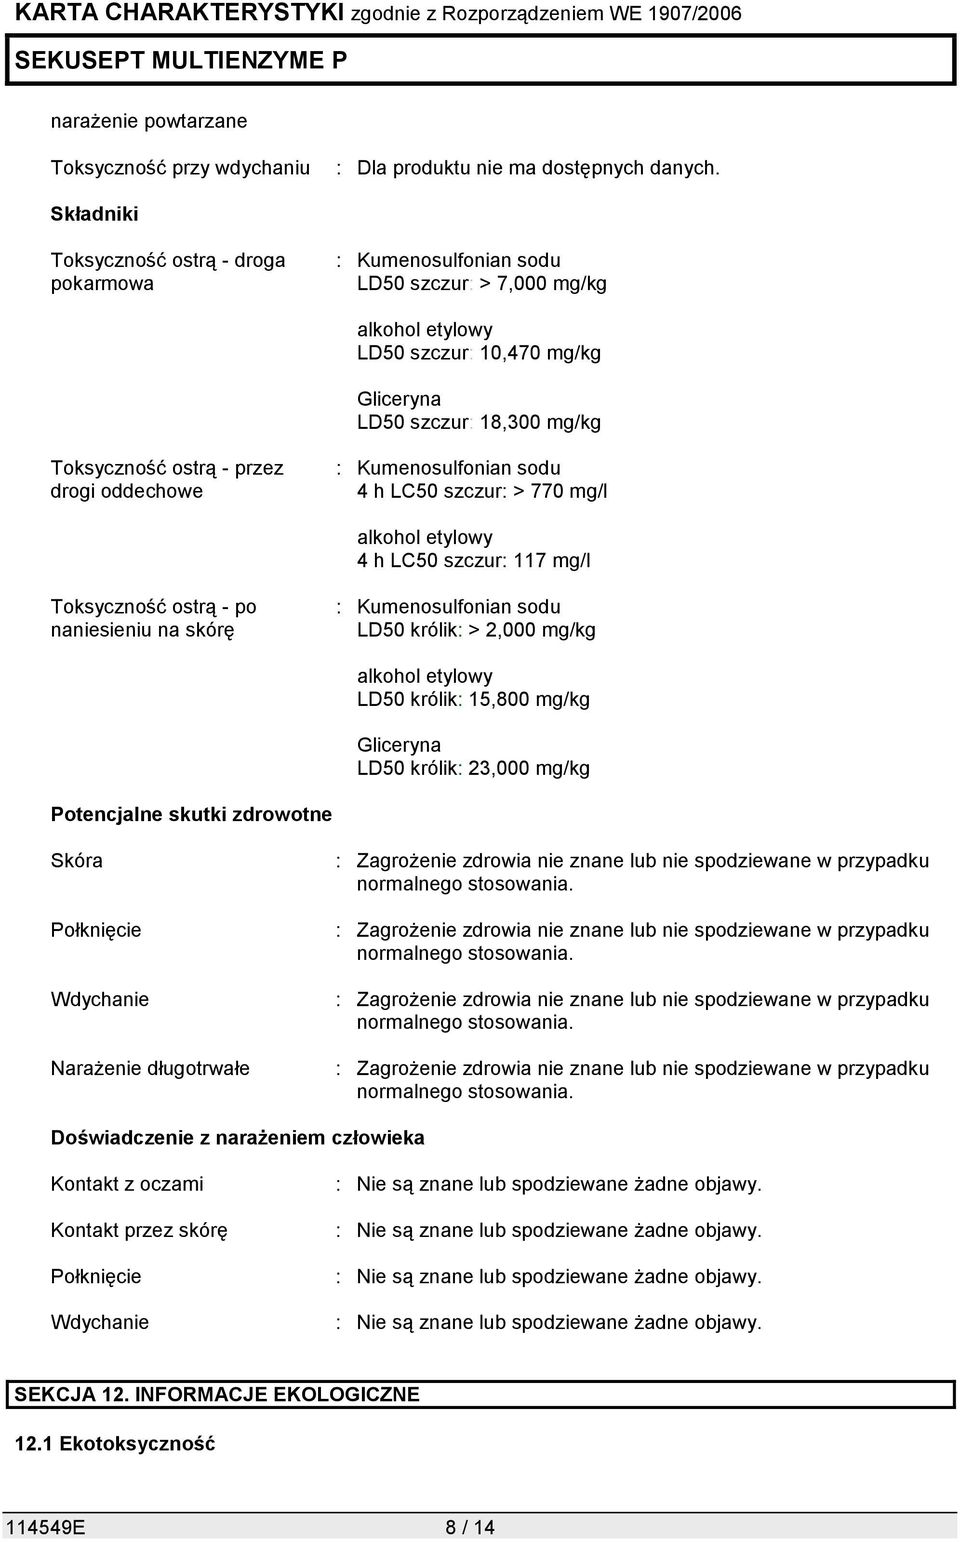 skórę : Kumenosulfonian sodu LD50 królik: > 2,000 mg/kg alkohol etylowy LD50 królik: 15,800 mg/kg Gliceryna LD50 królik: 23,000 mg/kg Potencjalne skutki zdrowotne Skóra Połknięcie Wdychanie Narażenie